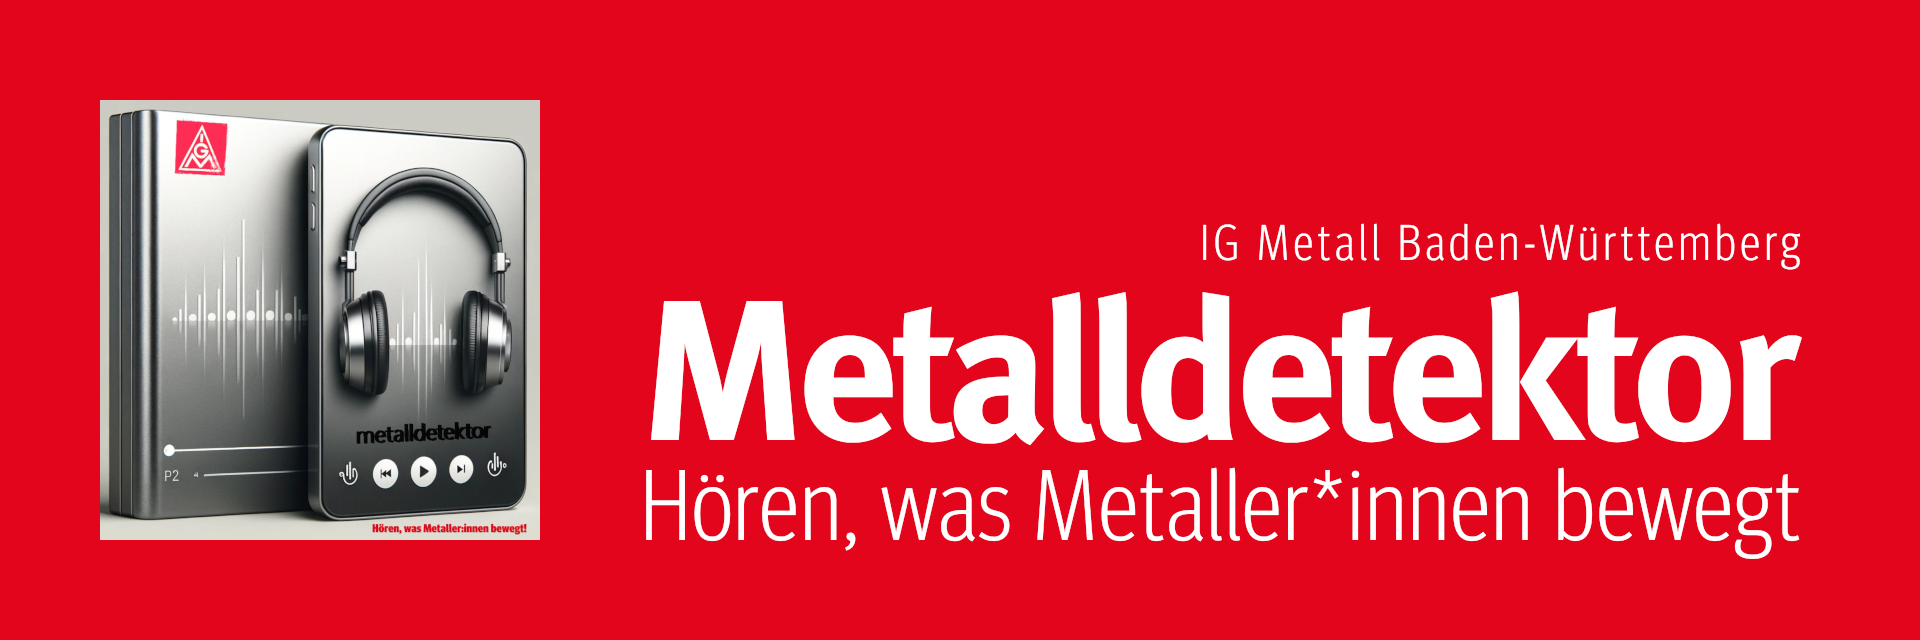 Podcast der IG Metall Baden-Württemberg